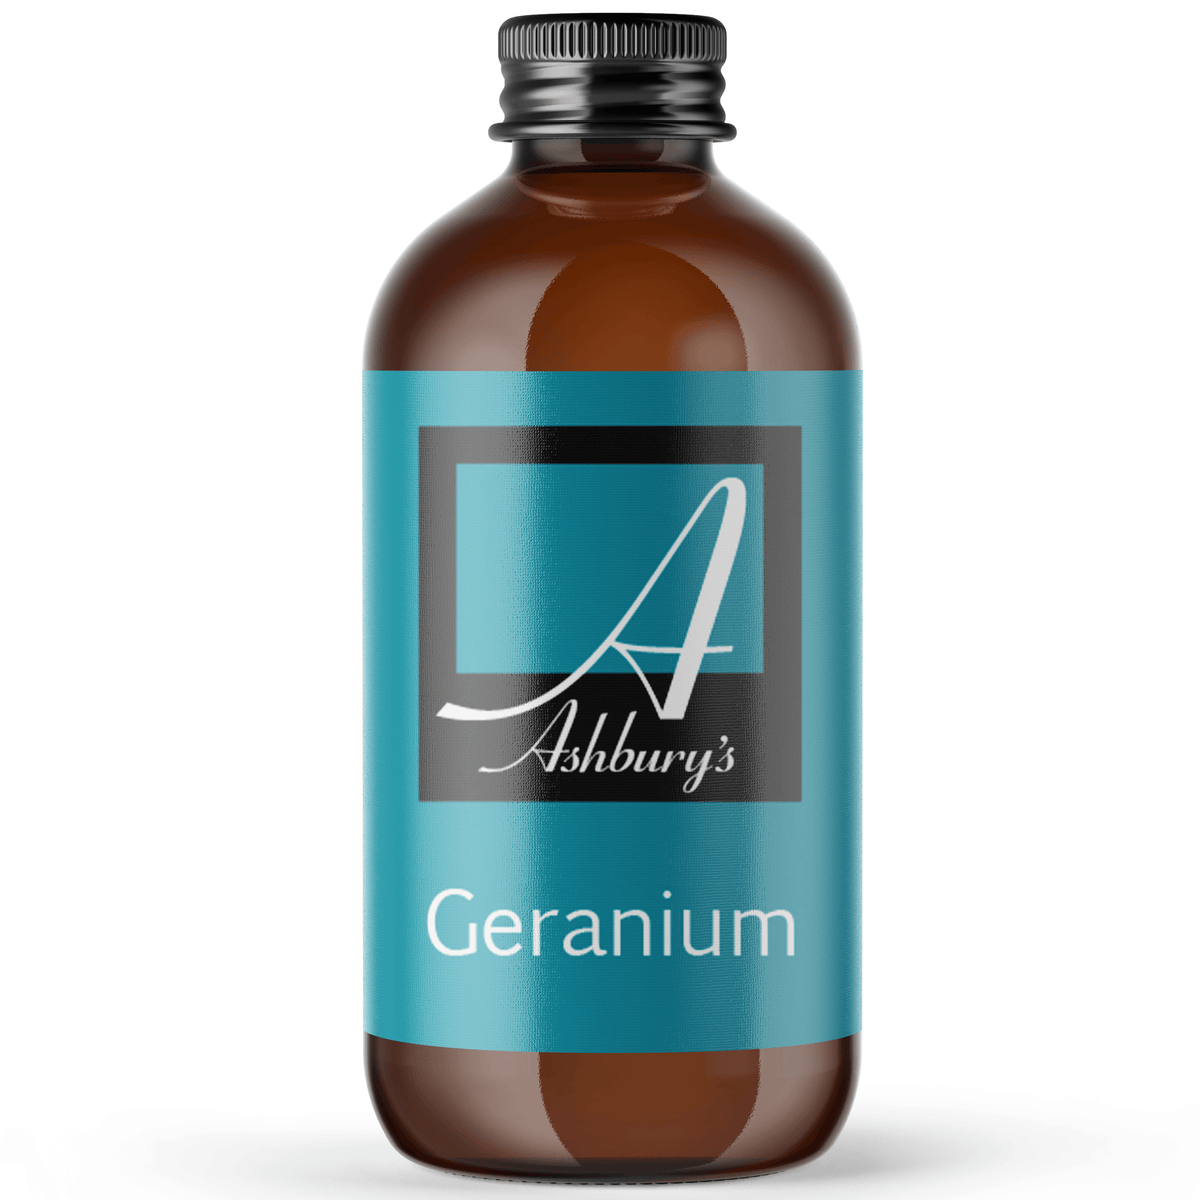 Geranium (Pelargonium graveolens)